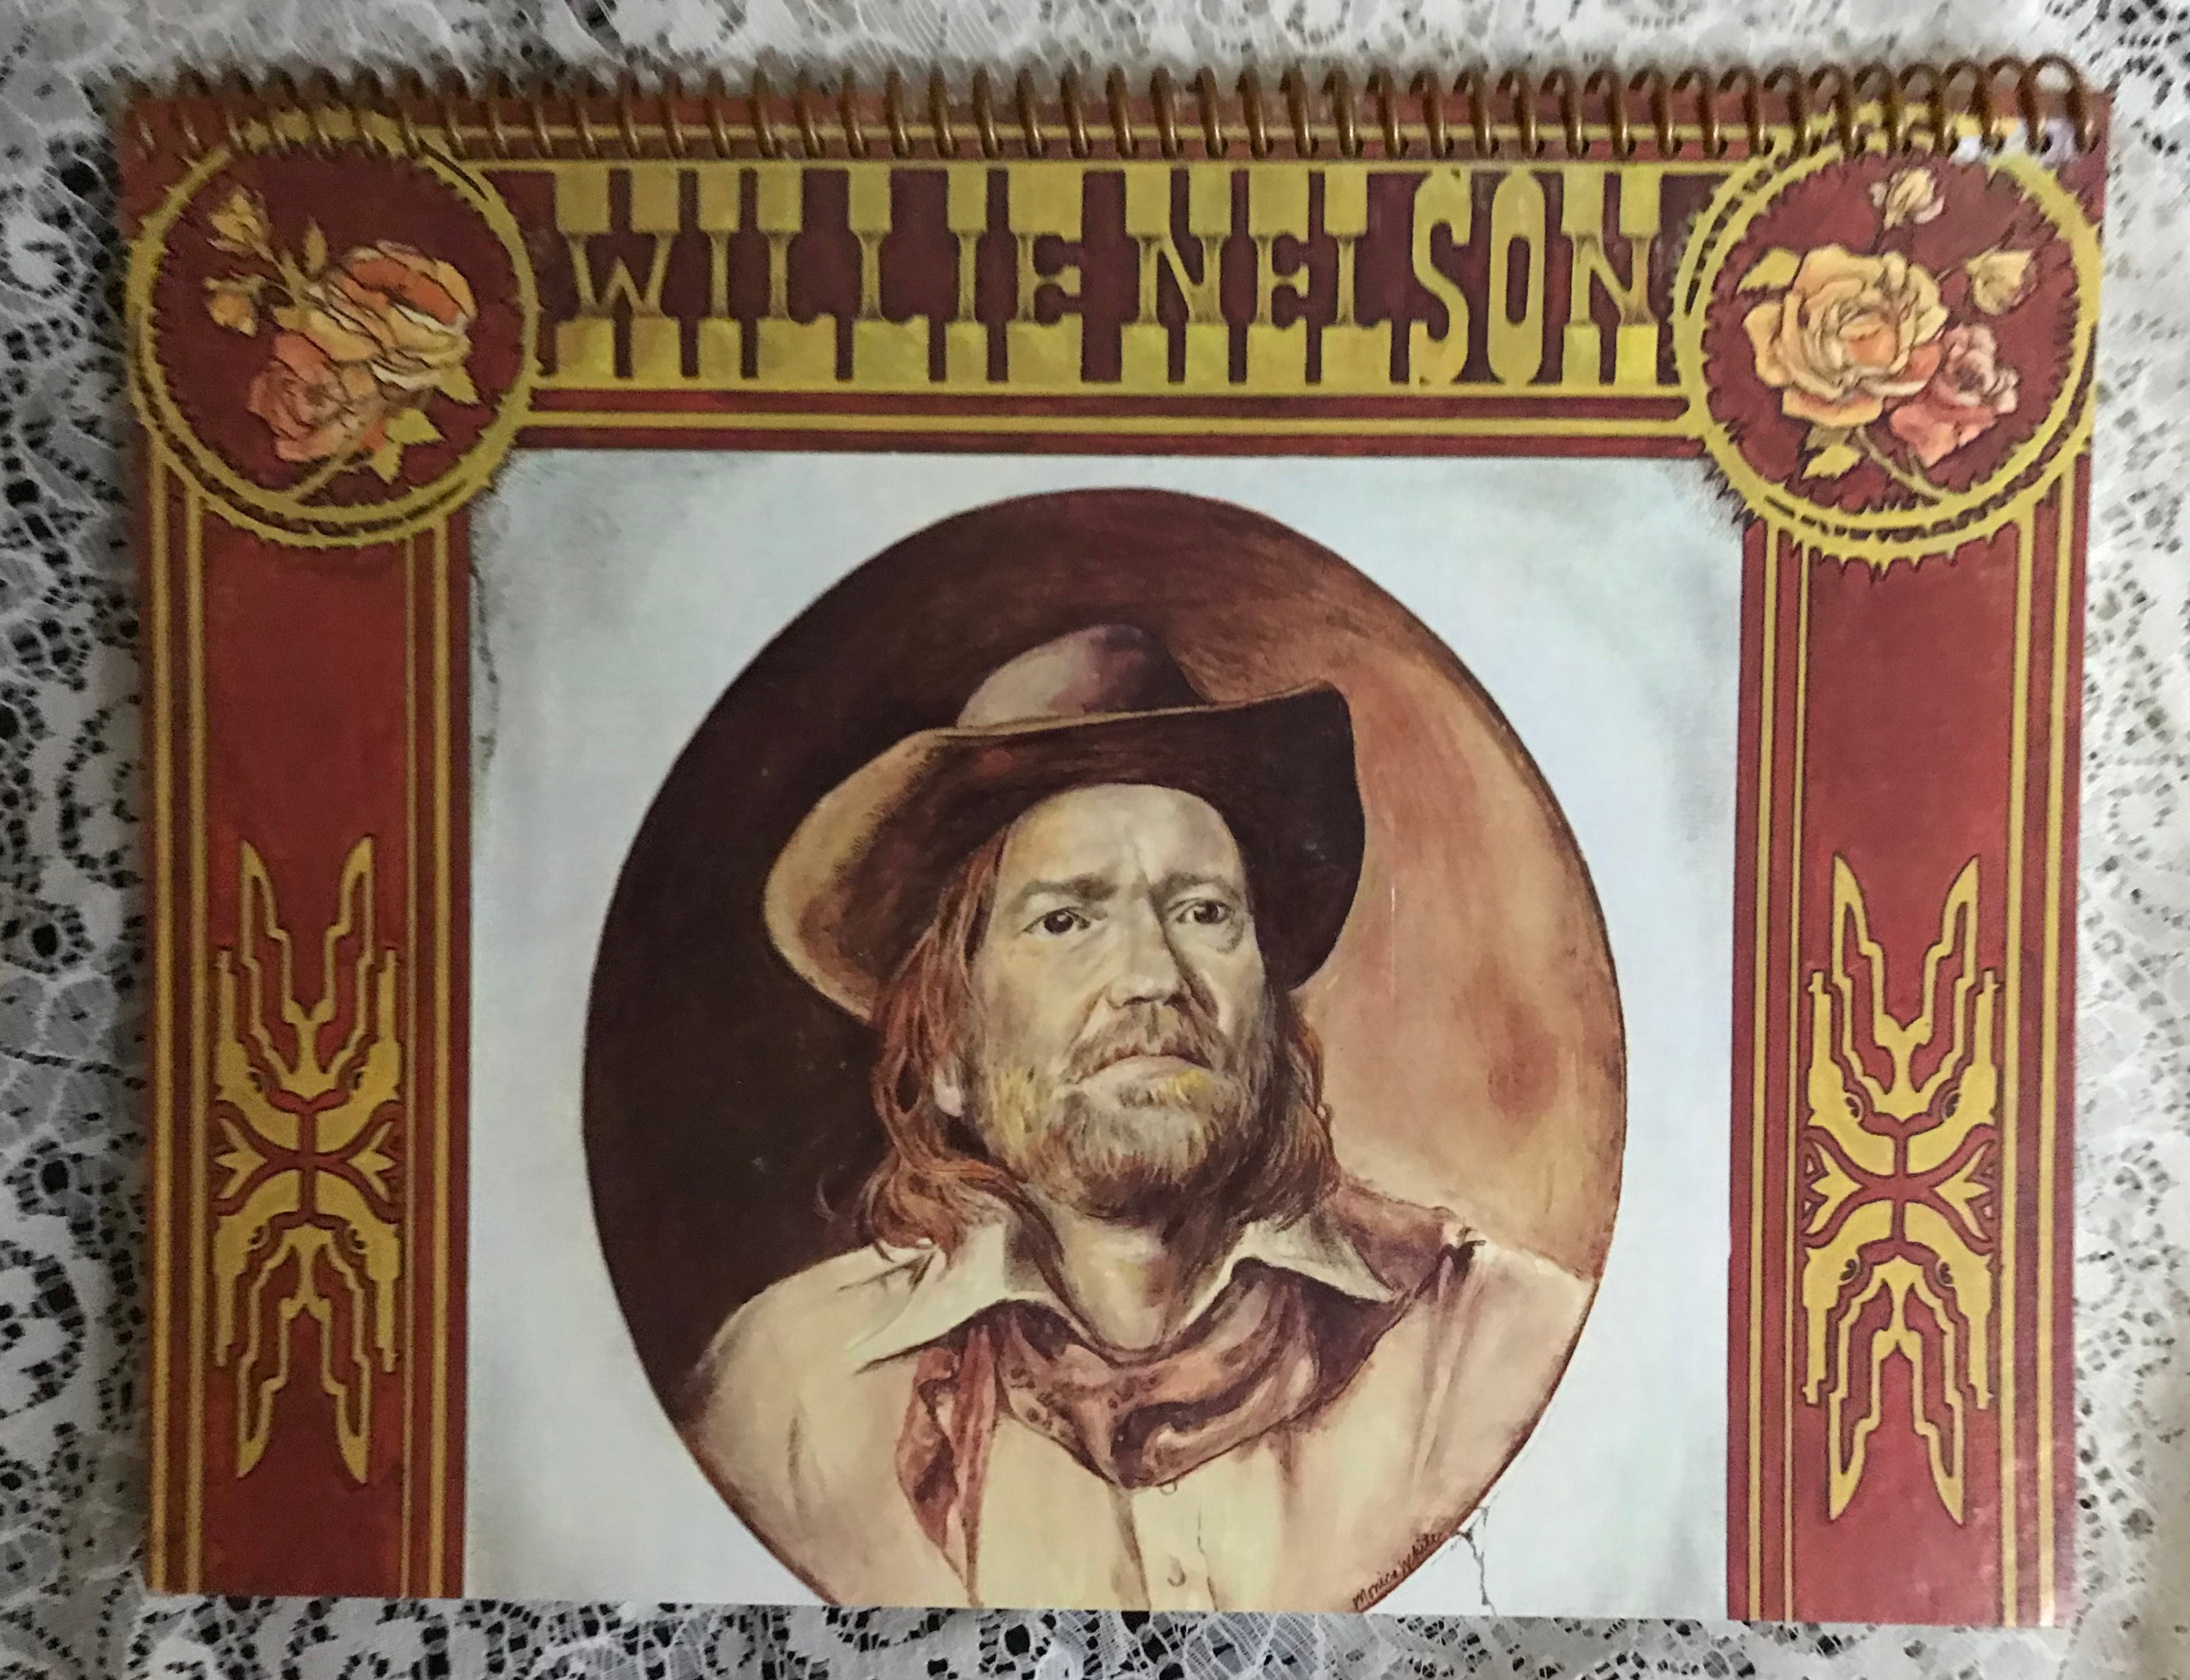 Willie Nelson Red Headed Stranger Album Cover Notebook